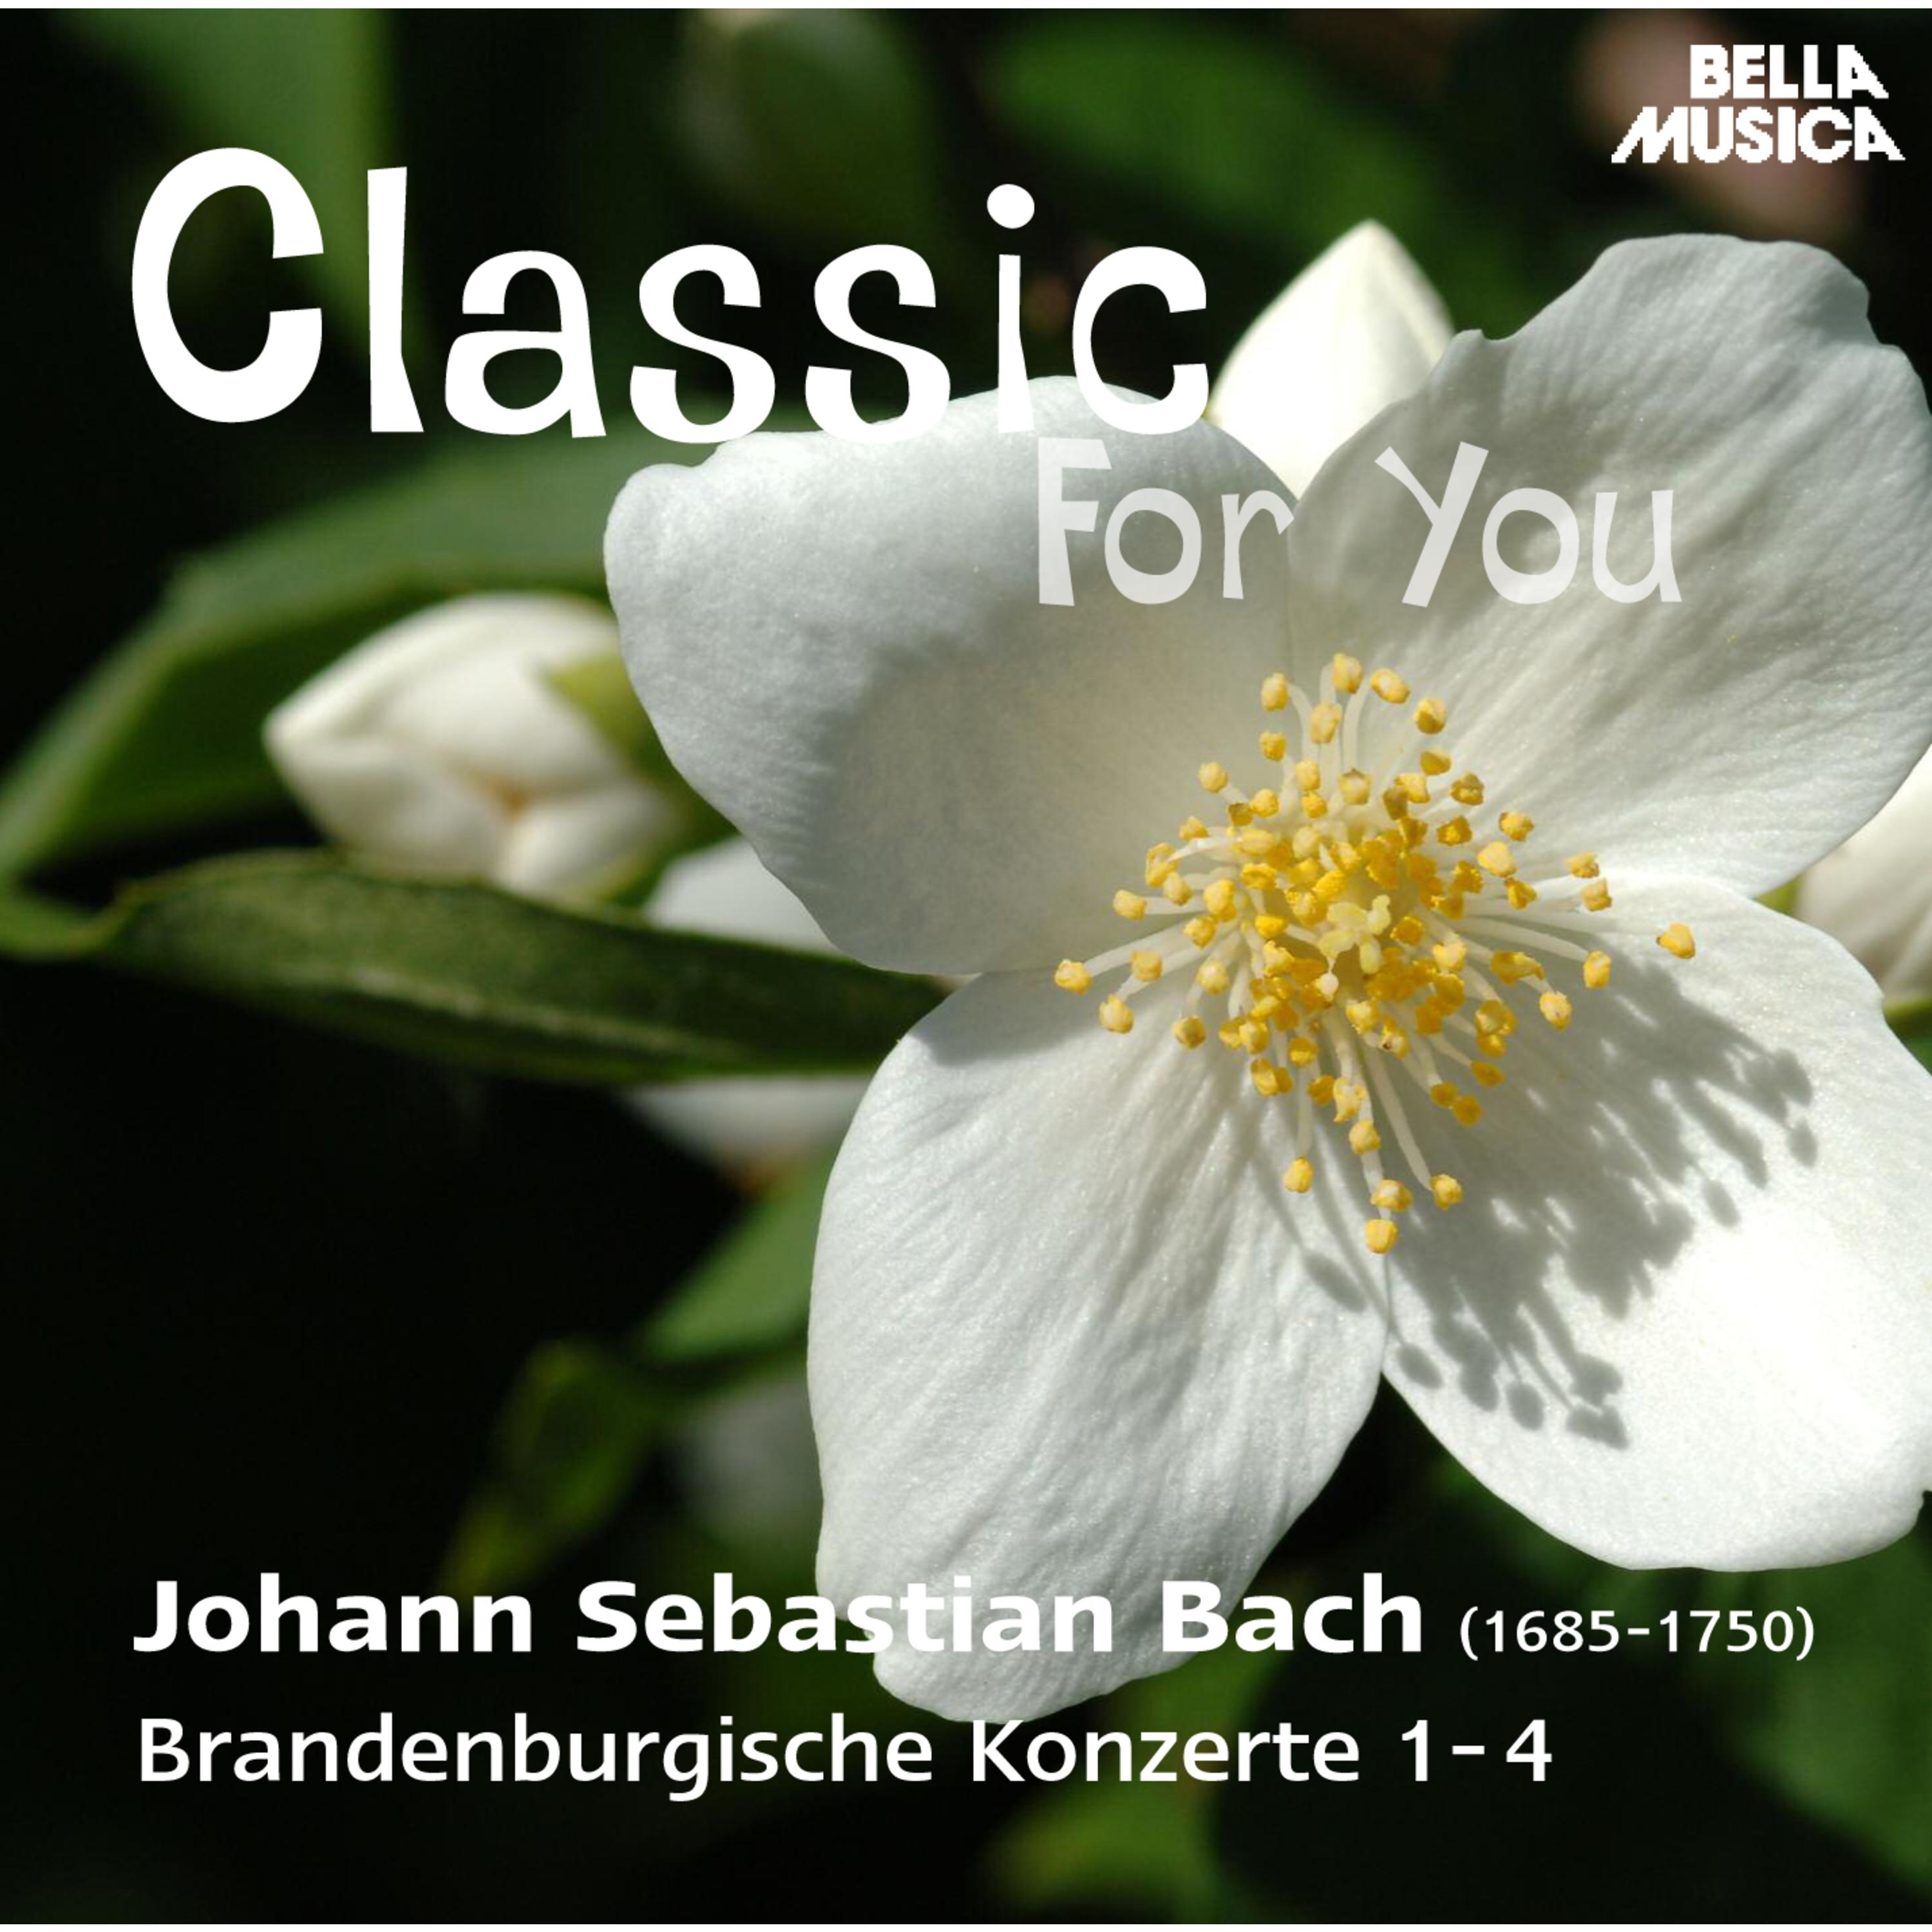 Brandenburgisches Konzert in F Major, BWV 1046, No. 1: III. Allegro